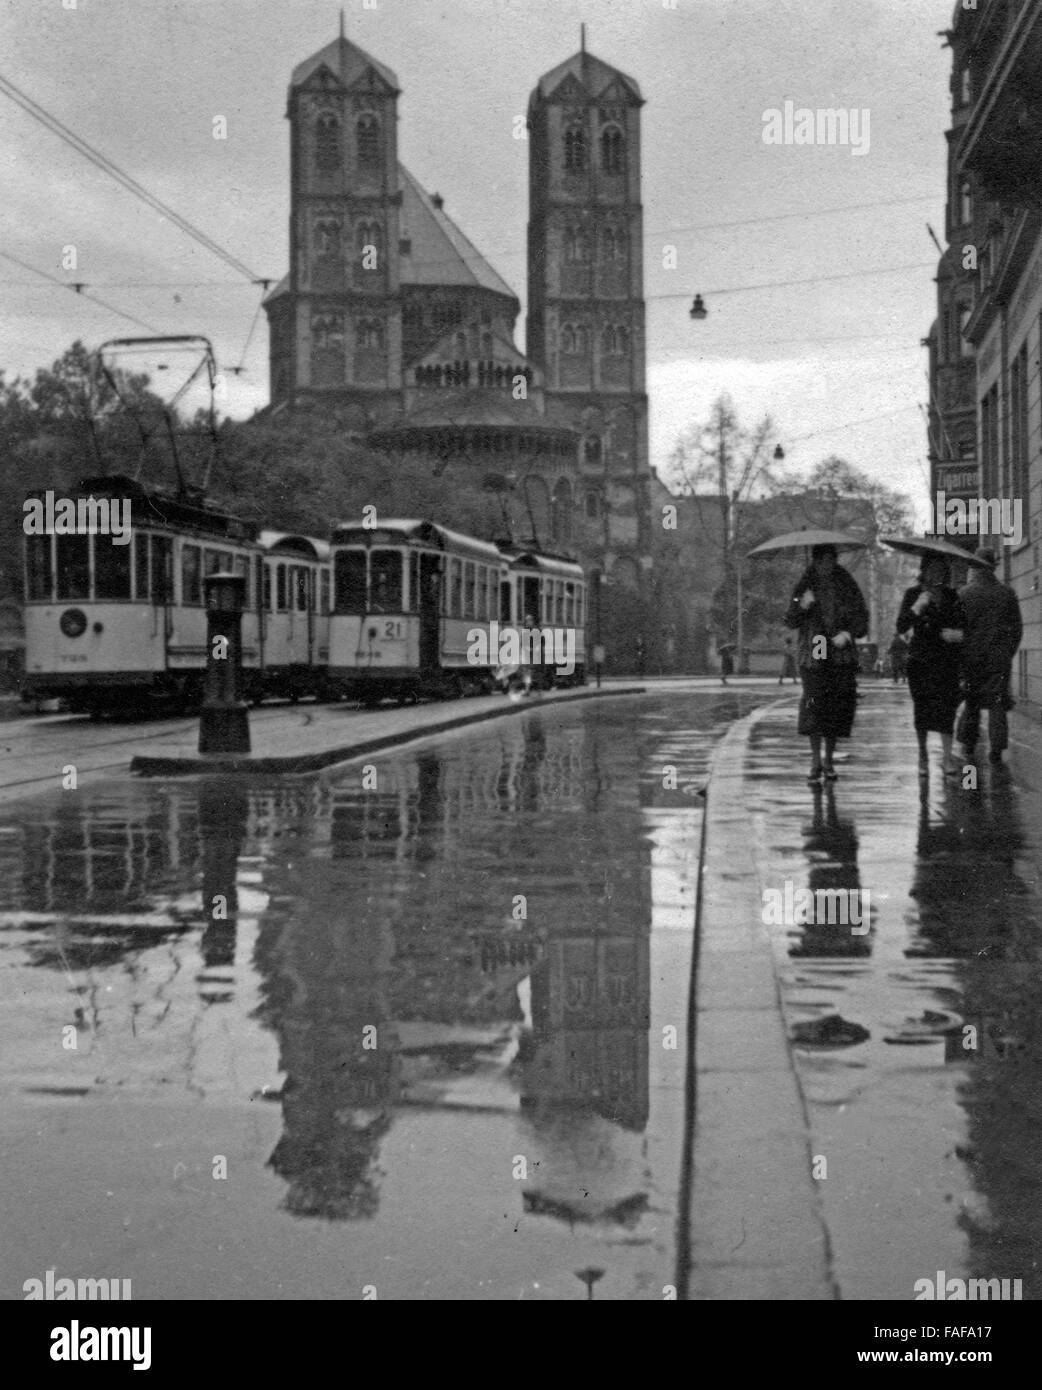 Gereonstraße und Kirche St. Gereon in der Innenstadt von Köln im Regen, Deutschland 1930er Jahre. Gereonstrasse street and St. Gereon's church at Cologne city centre in the rain, Germany 1930s. Stock Photo